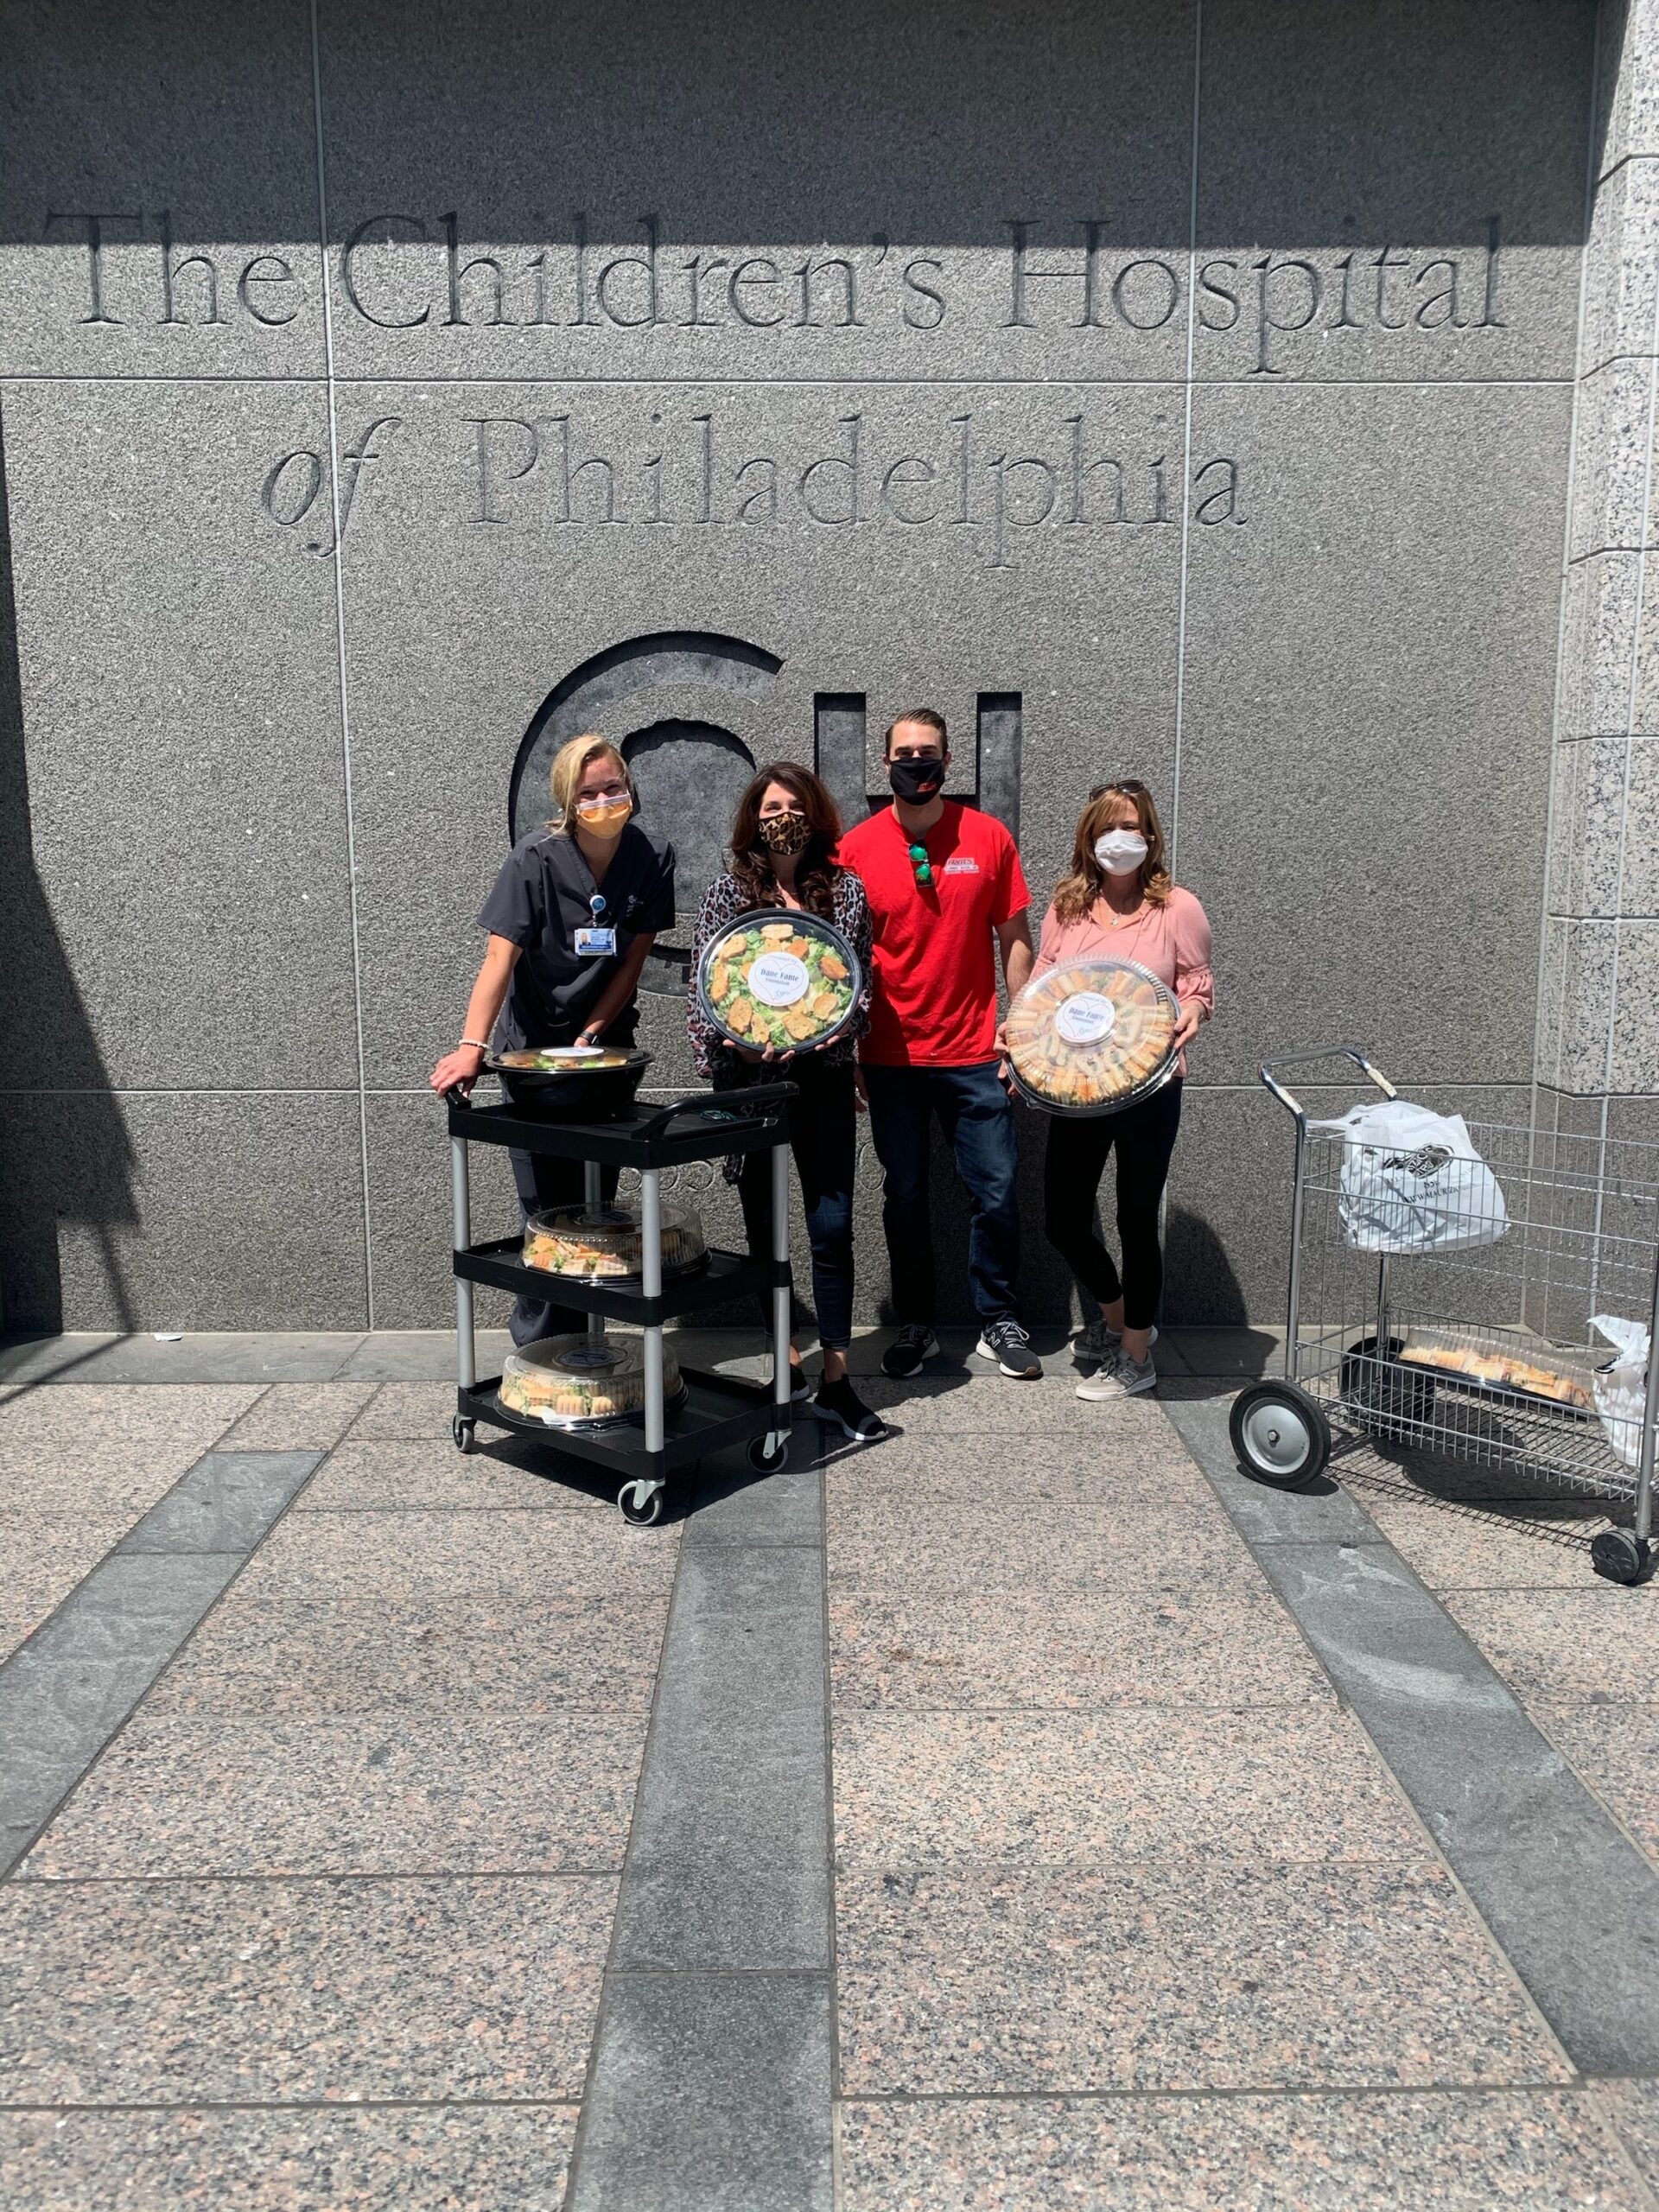 Delivering Food to Children's Hospital of Philadelphia